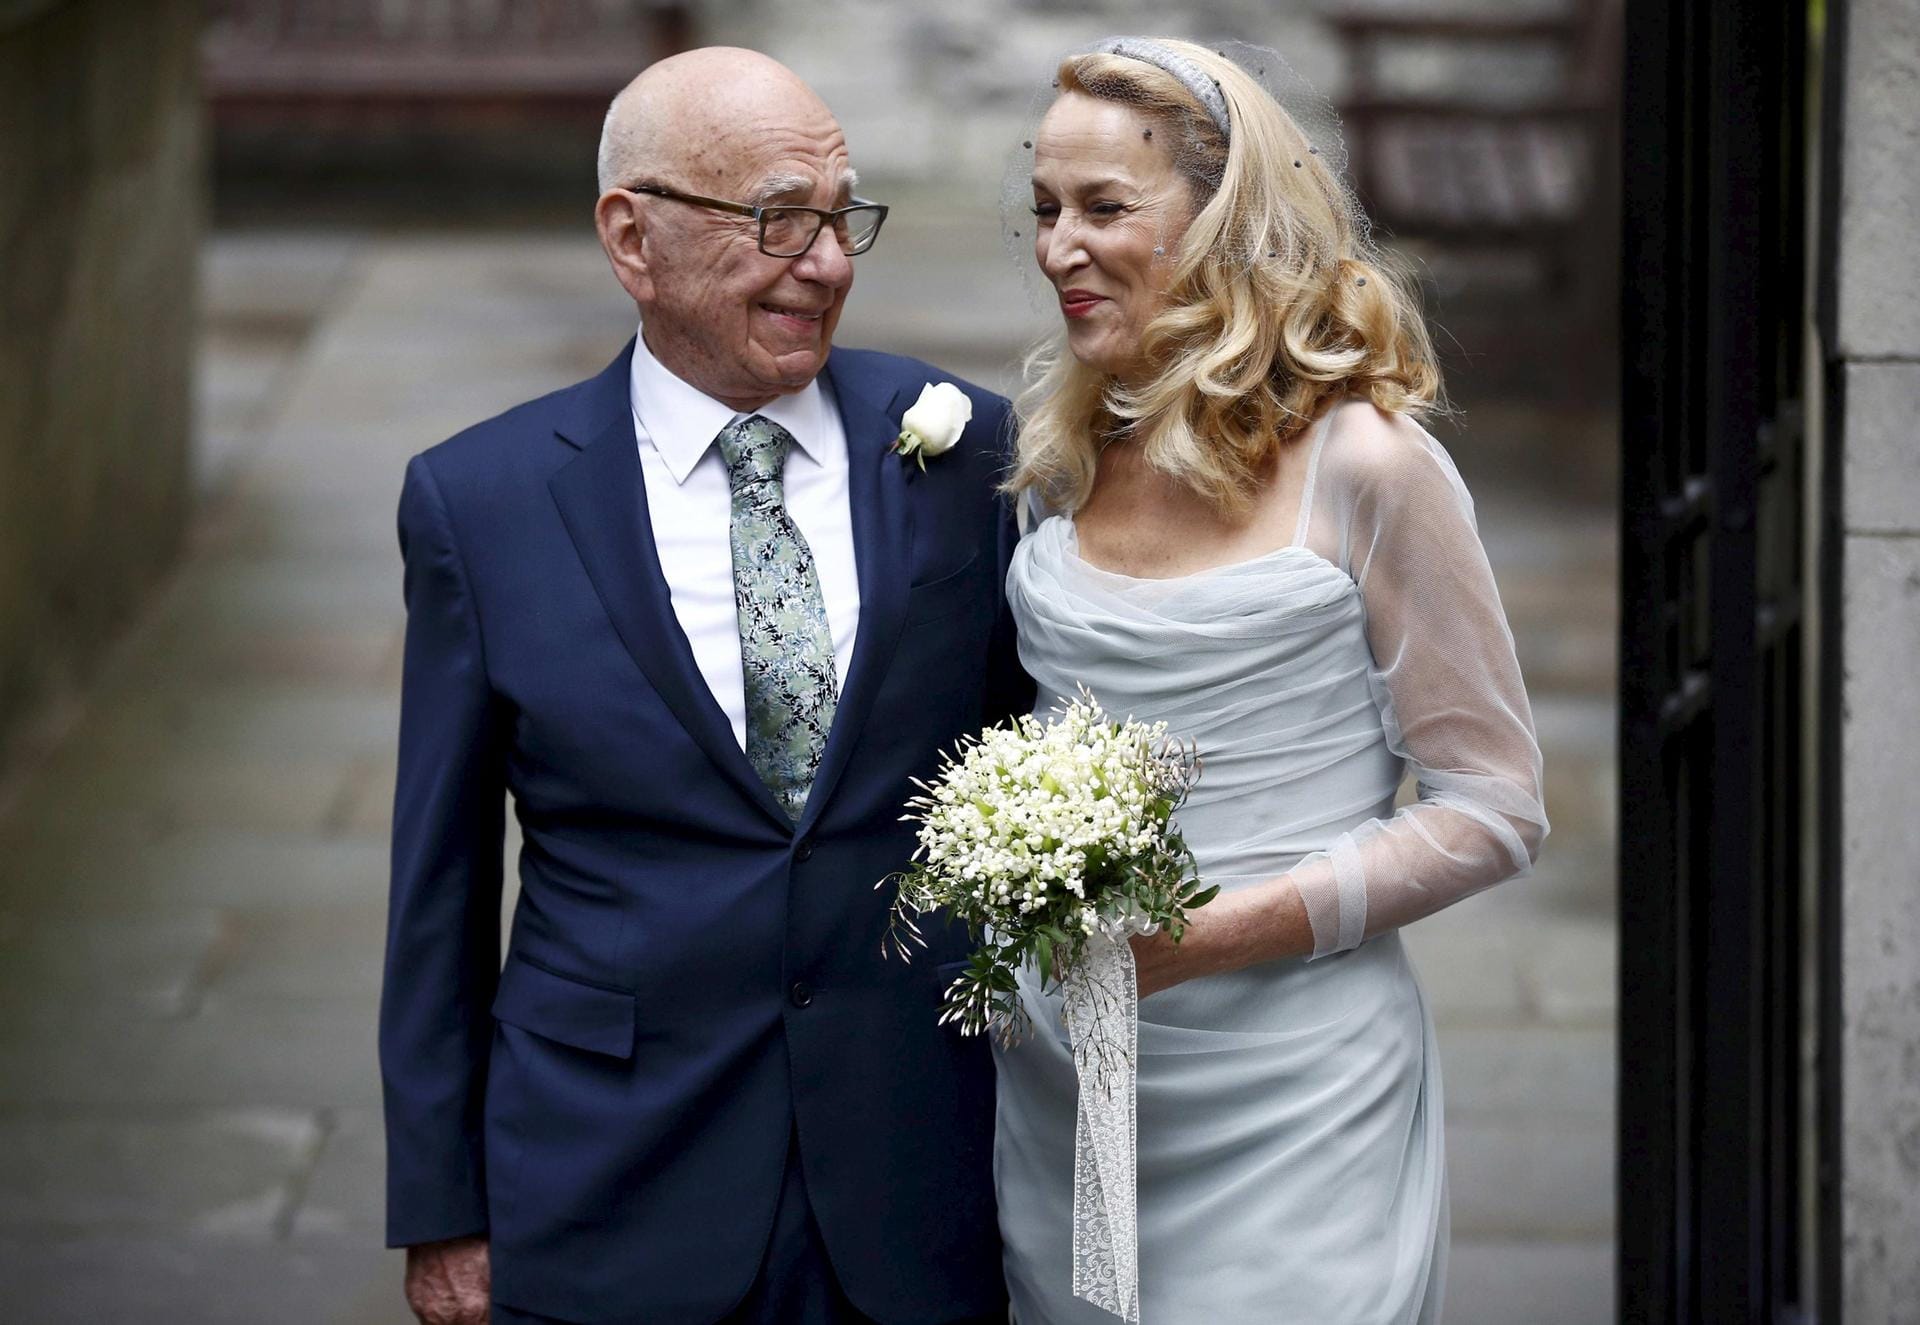 Medienmogul Murdoch und das ehemalige Topmodel Jerry Hall feiern ihre Hochzeit in London.